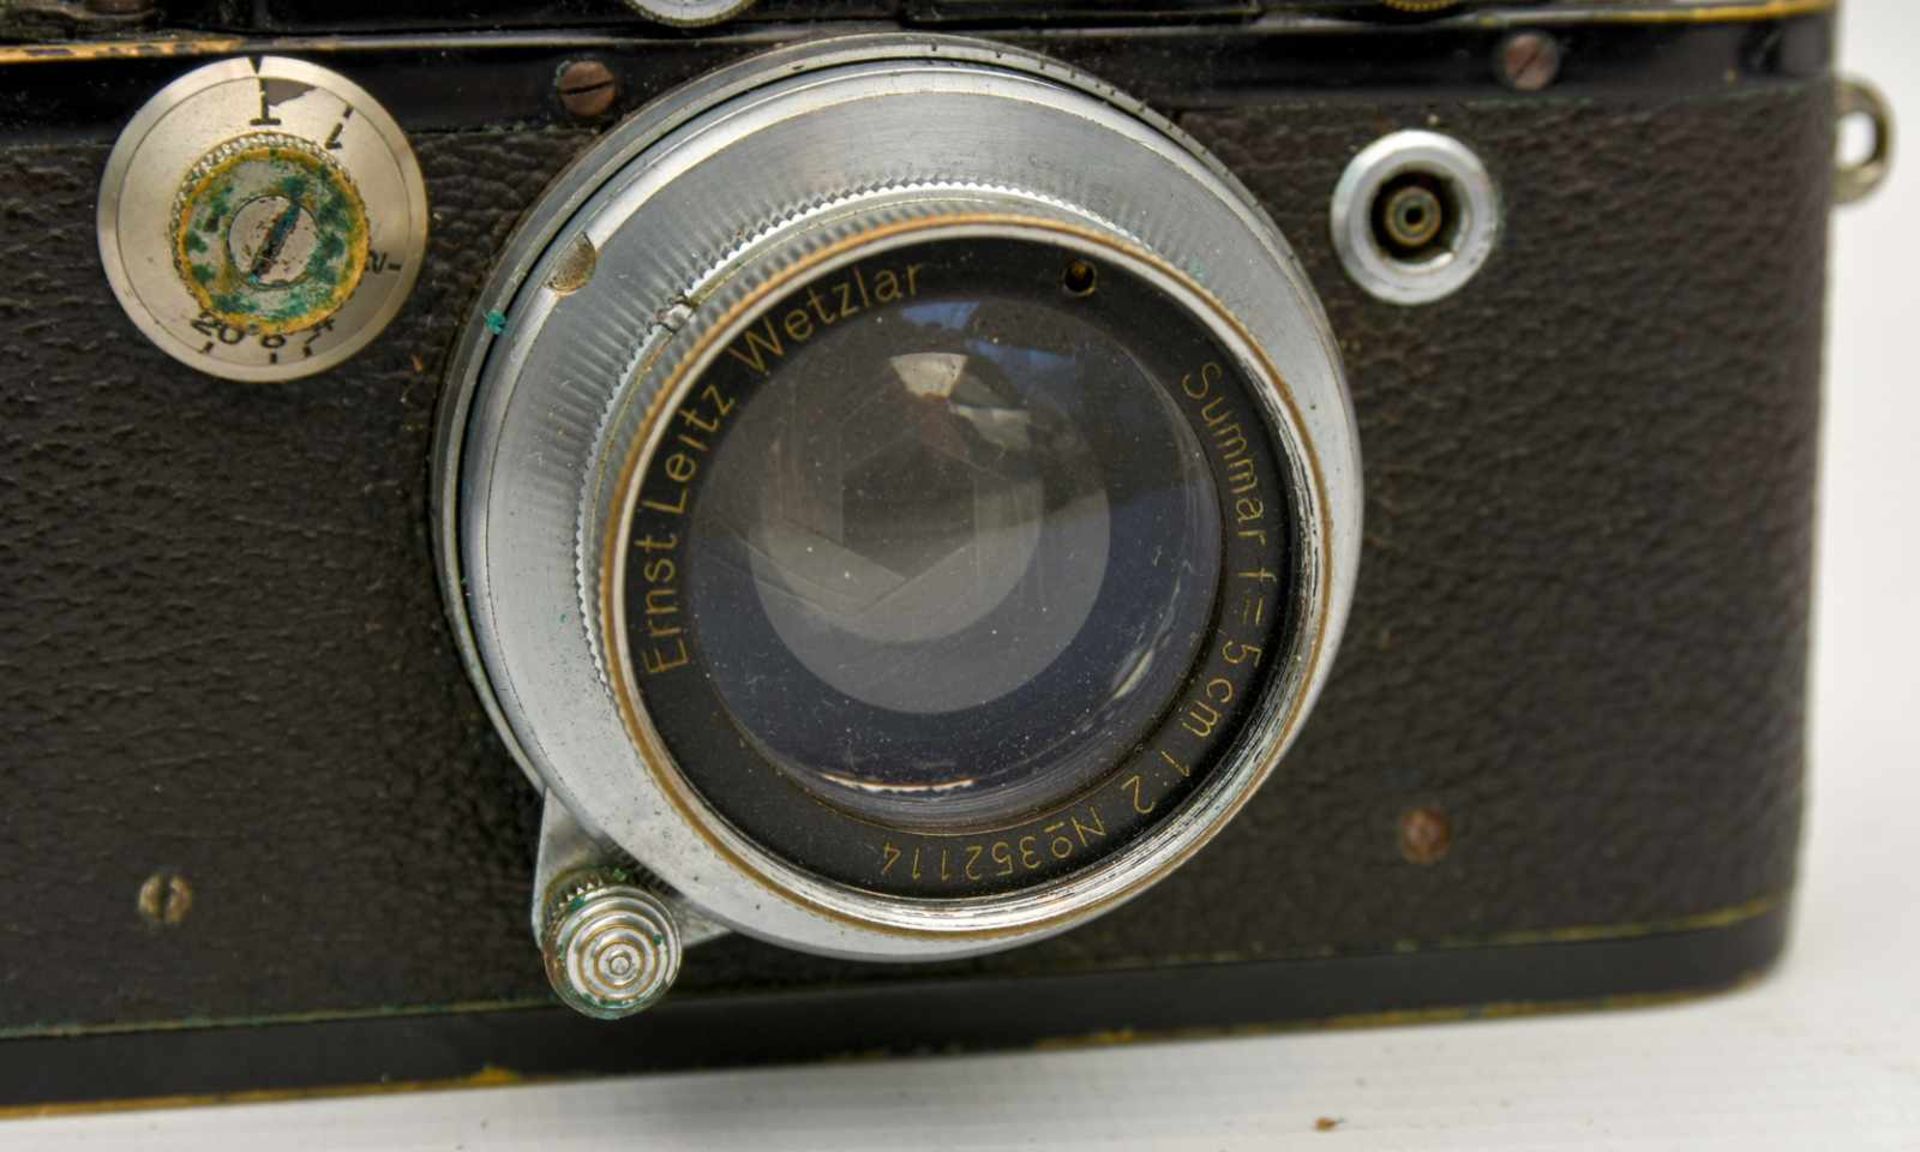 LEICA KAMERA, Deutsches Reich um 1935 Kamera der Firma Leica "Ernst Leitz Wetzlar D.R,.P." Alters- - Bild 3 aus 9